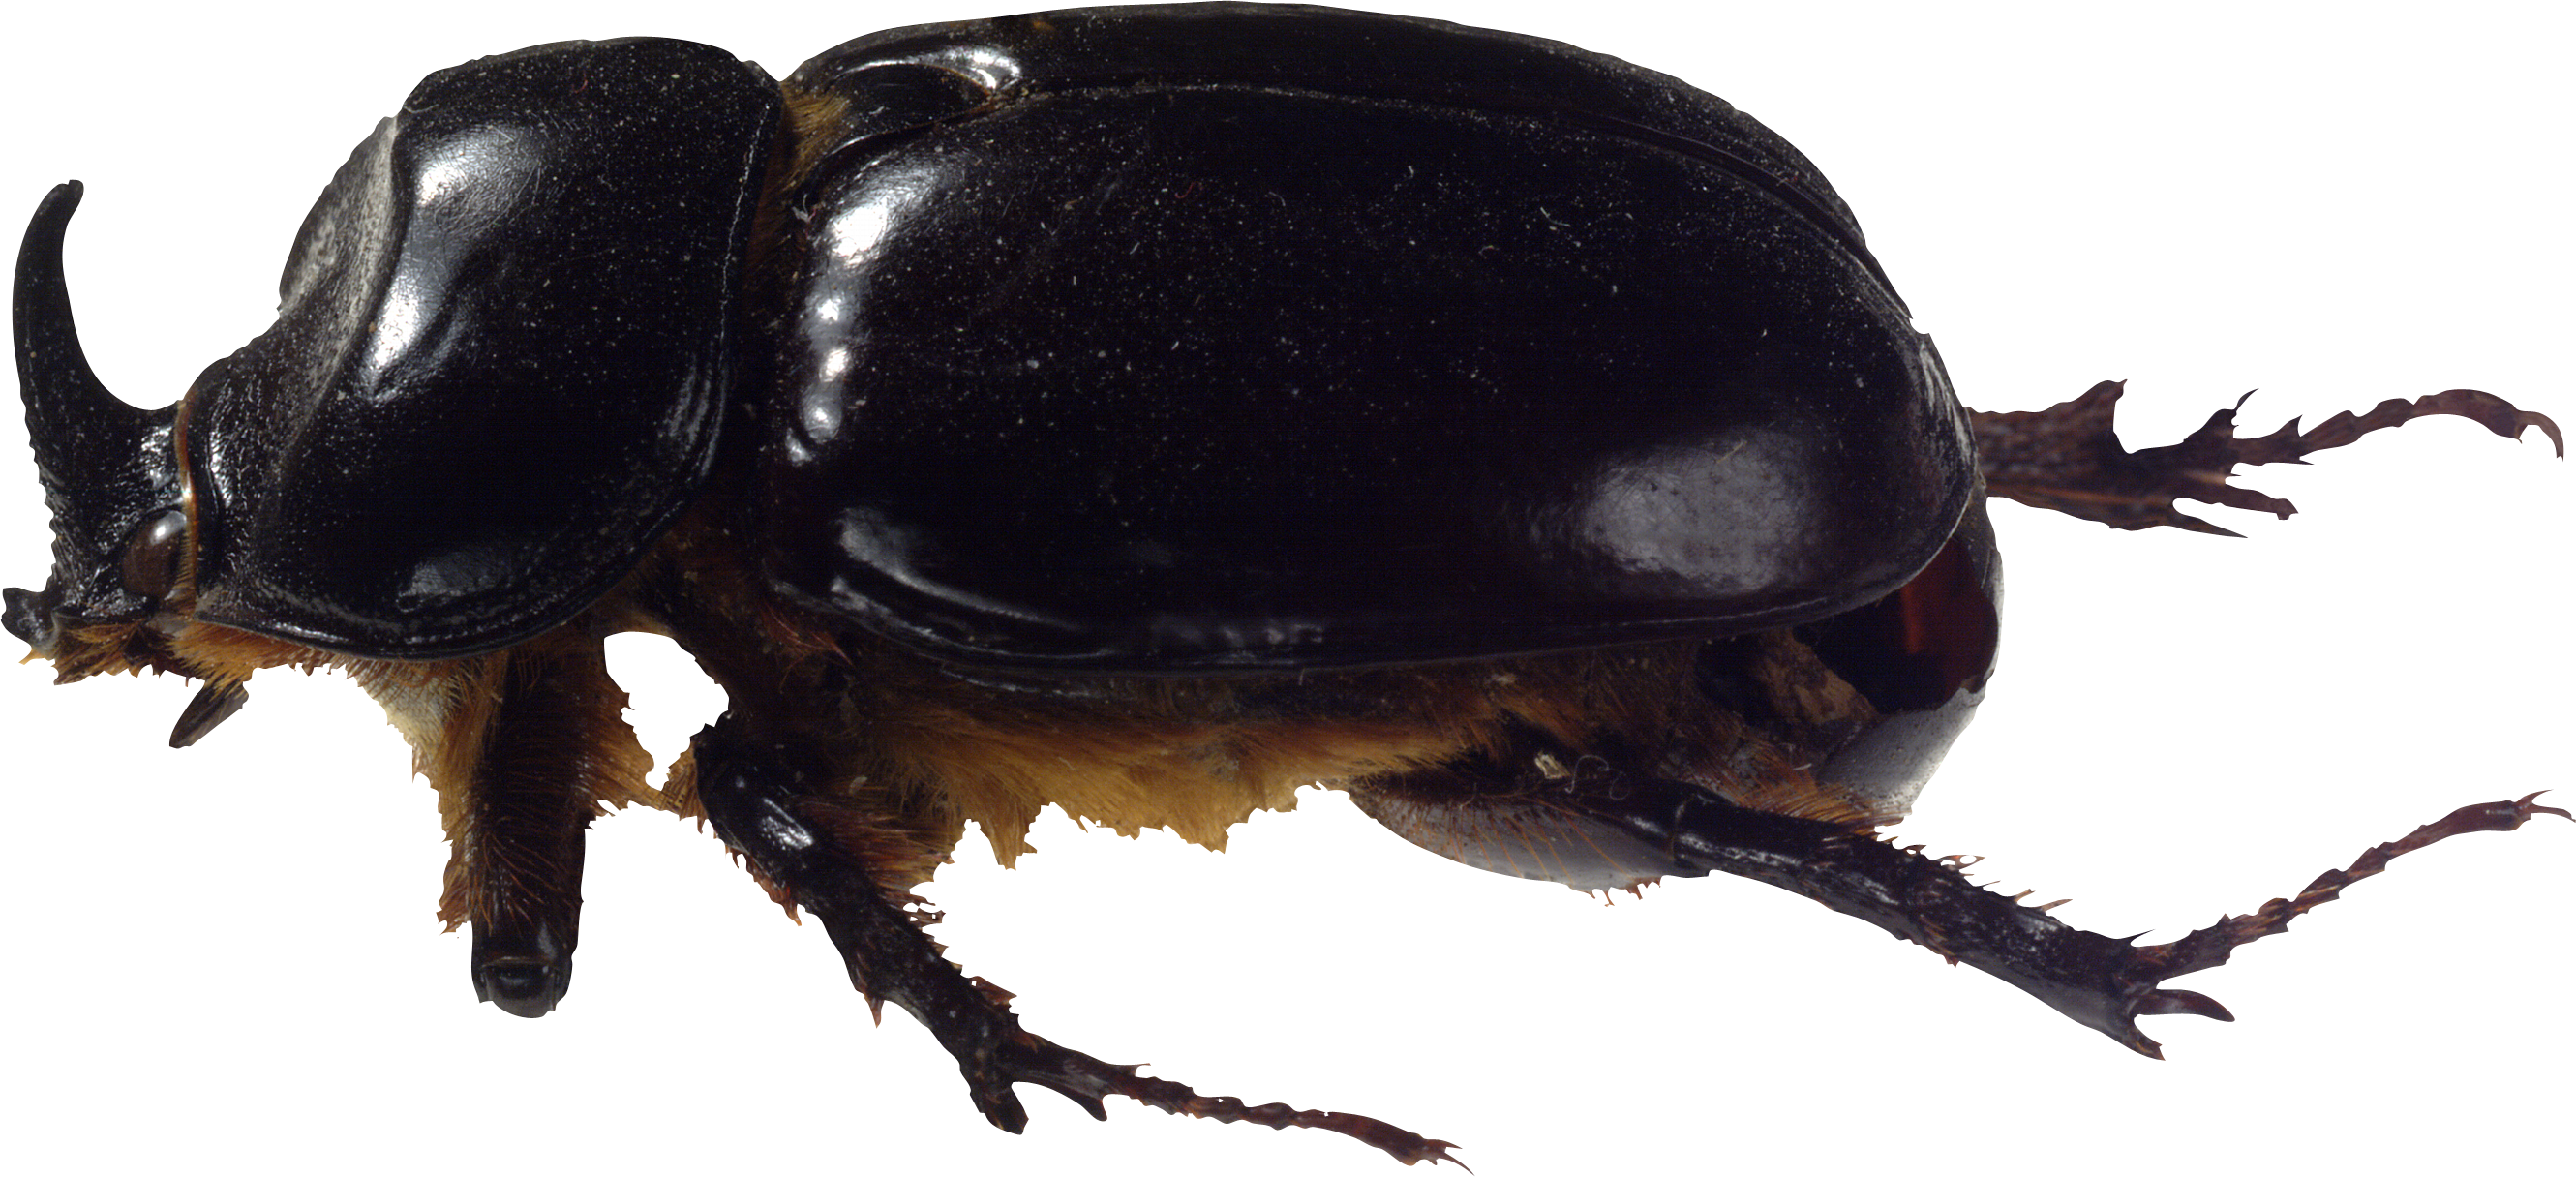 Kumbang, kumbang kotoran